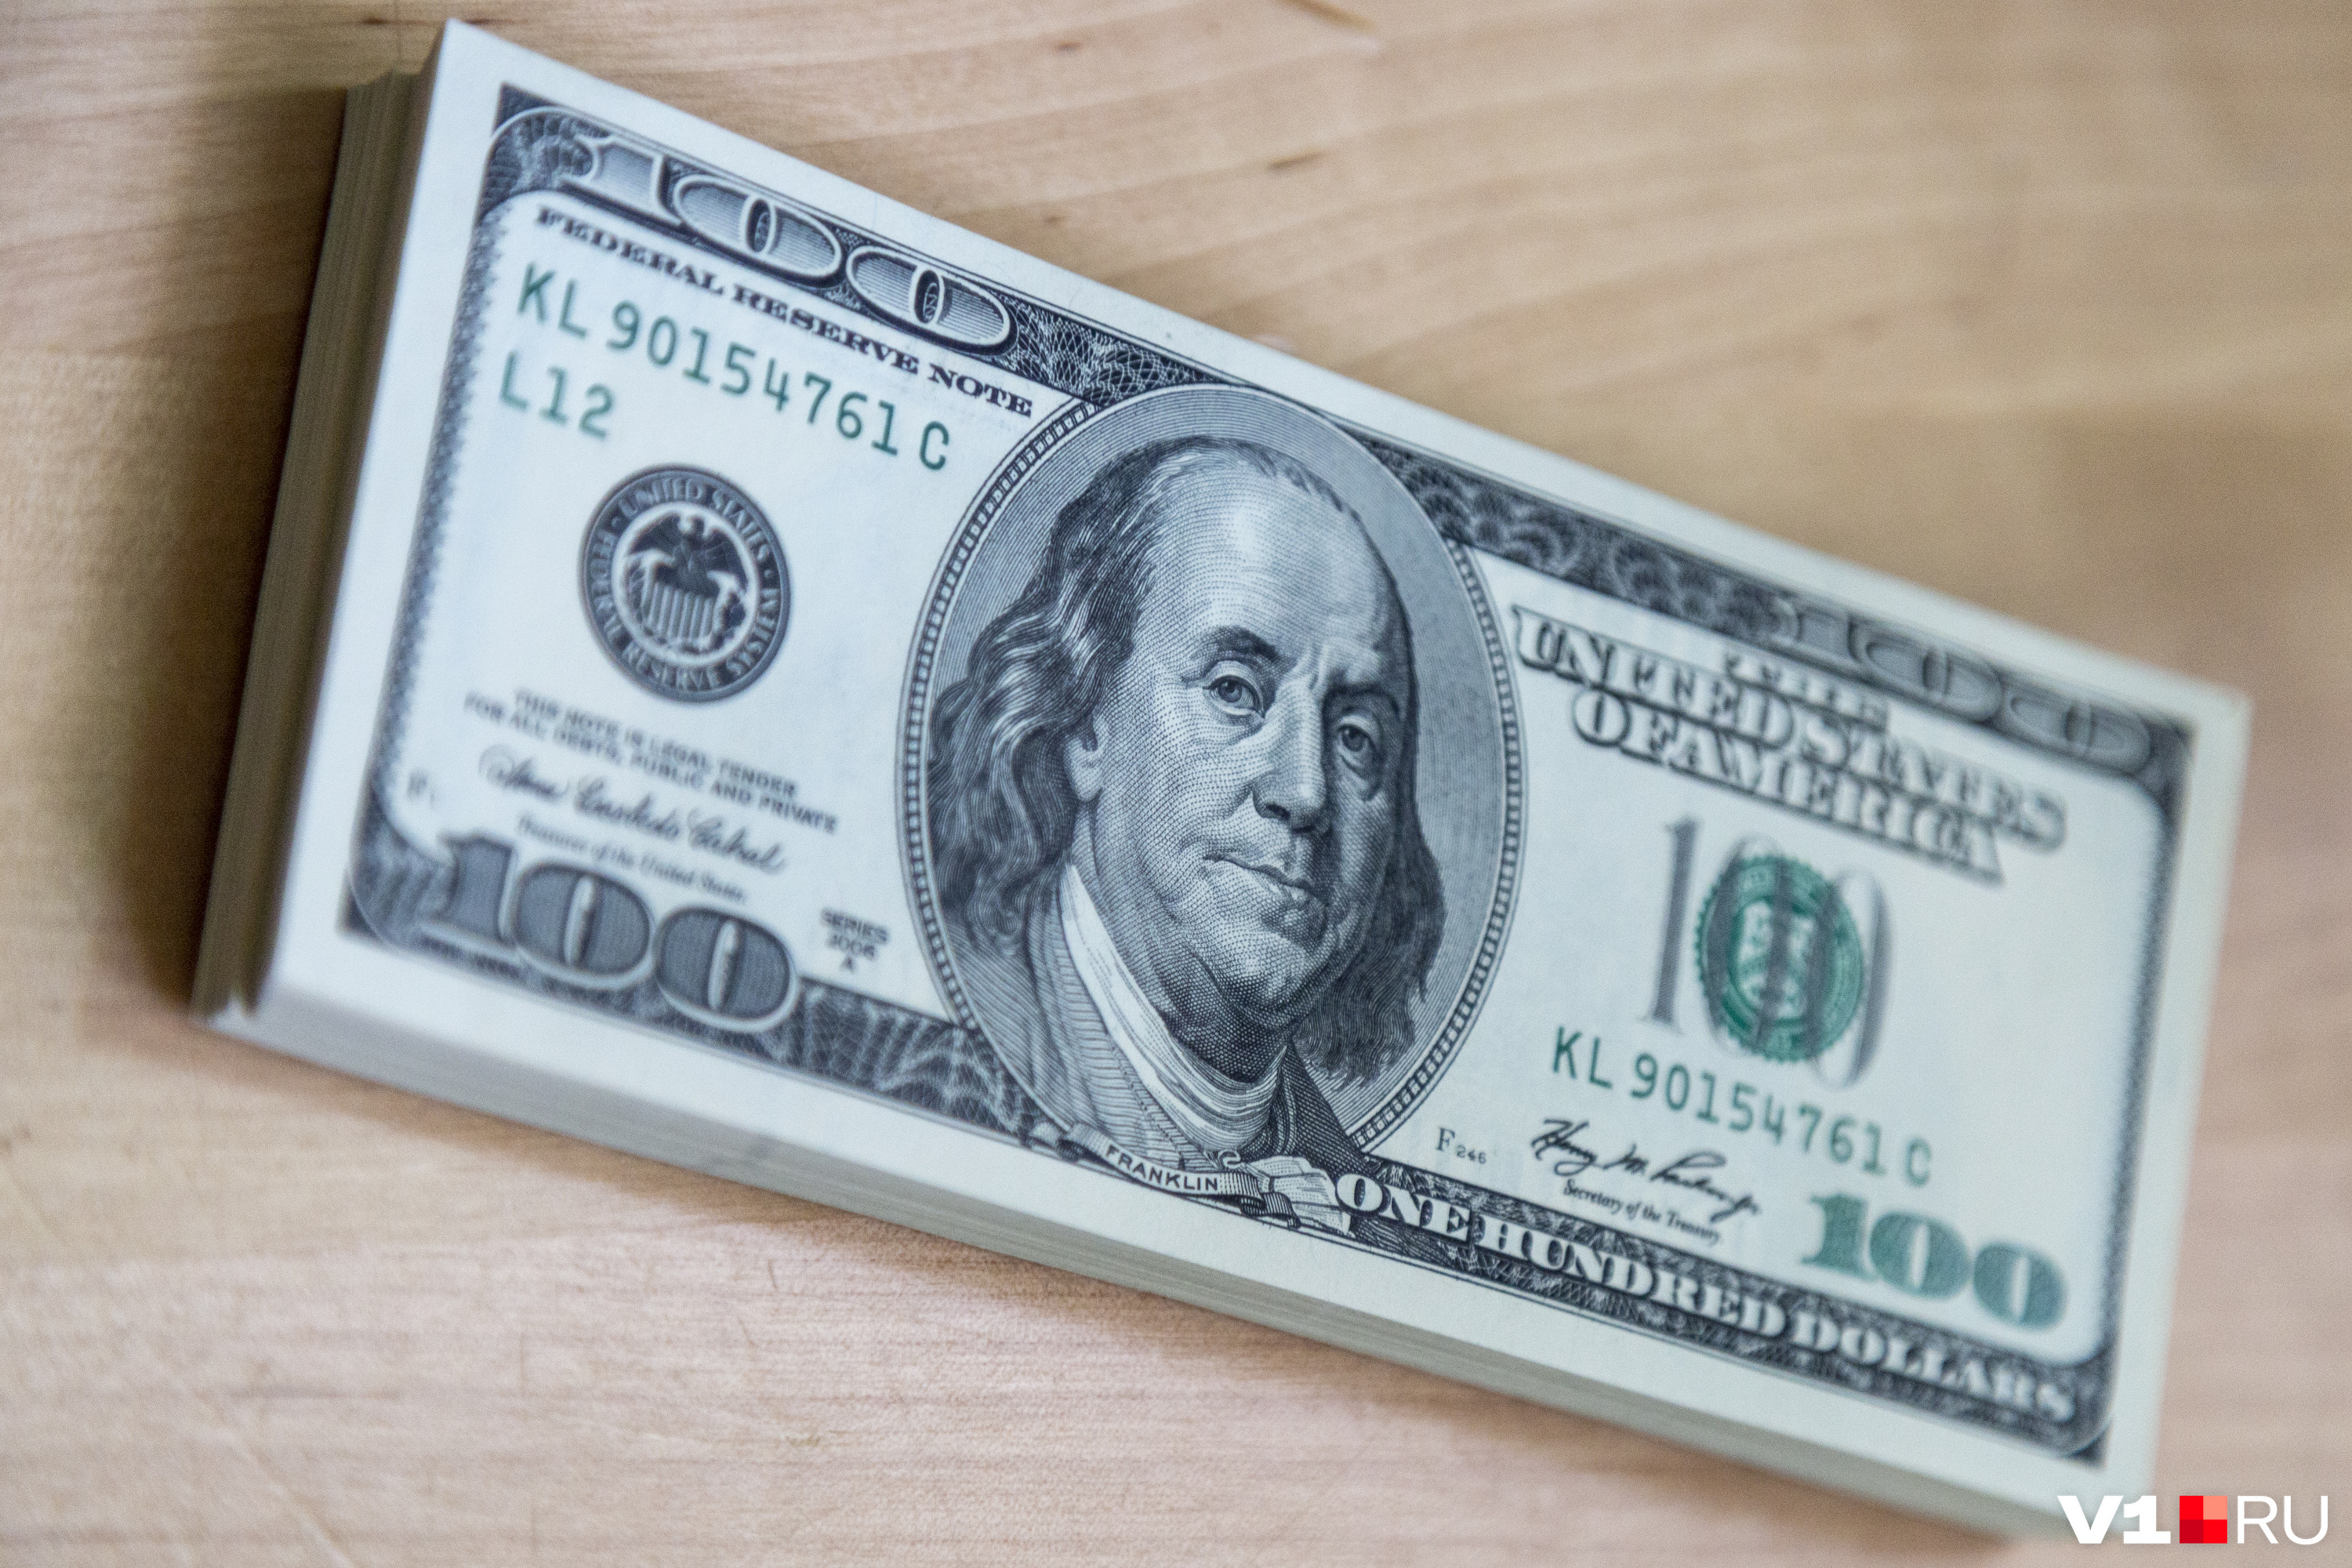 За курсом доллара экономист советует следить и покупать, если есть потребность в валюте